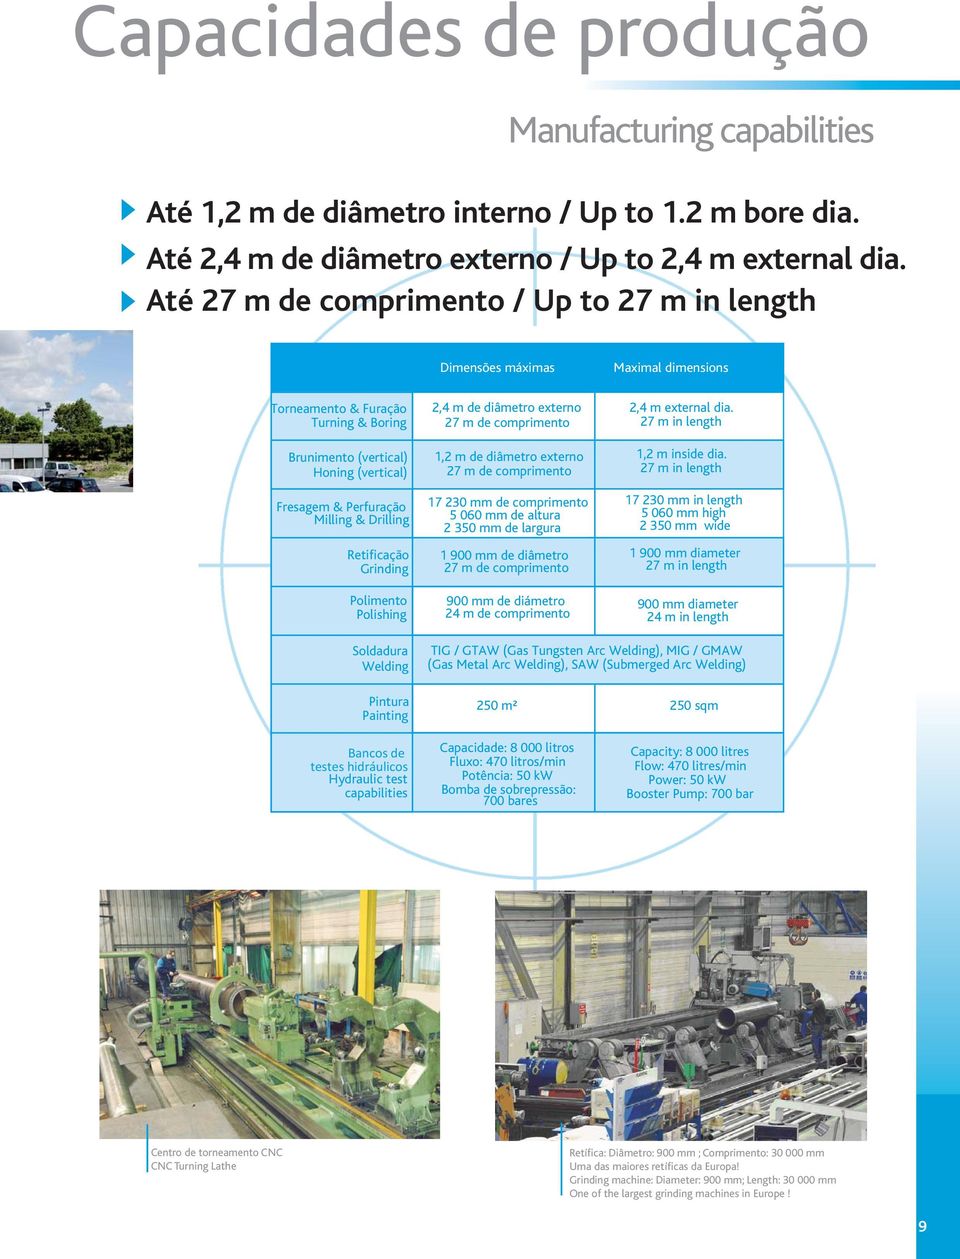 Drilling Retificação Grinding Polimento Polishing 2,4 m de diâmetro externo 27 m de comprimento 1,2 m de diâmetro externo 27 m de comprimento 17 230 mm de comprimento 5 060 mm de altura 2 350 mm de